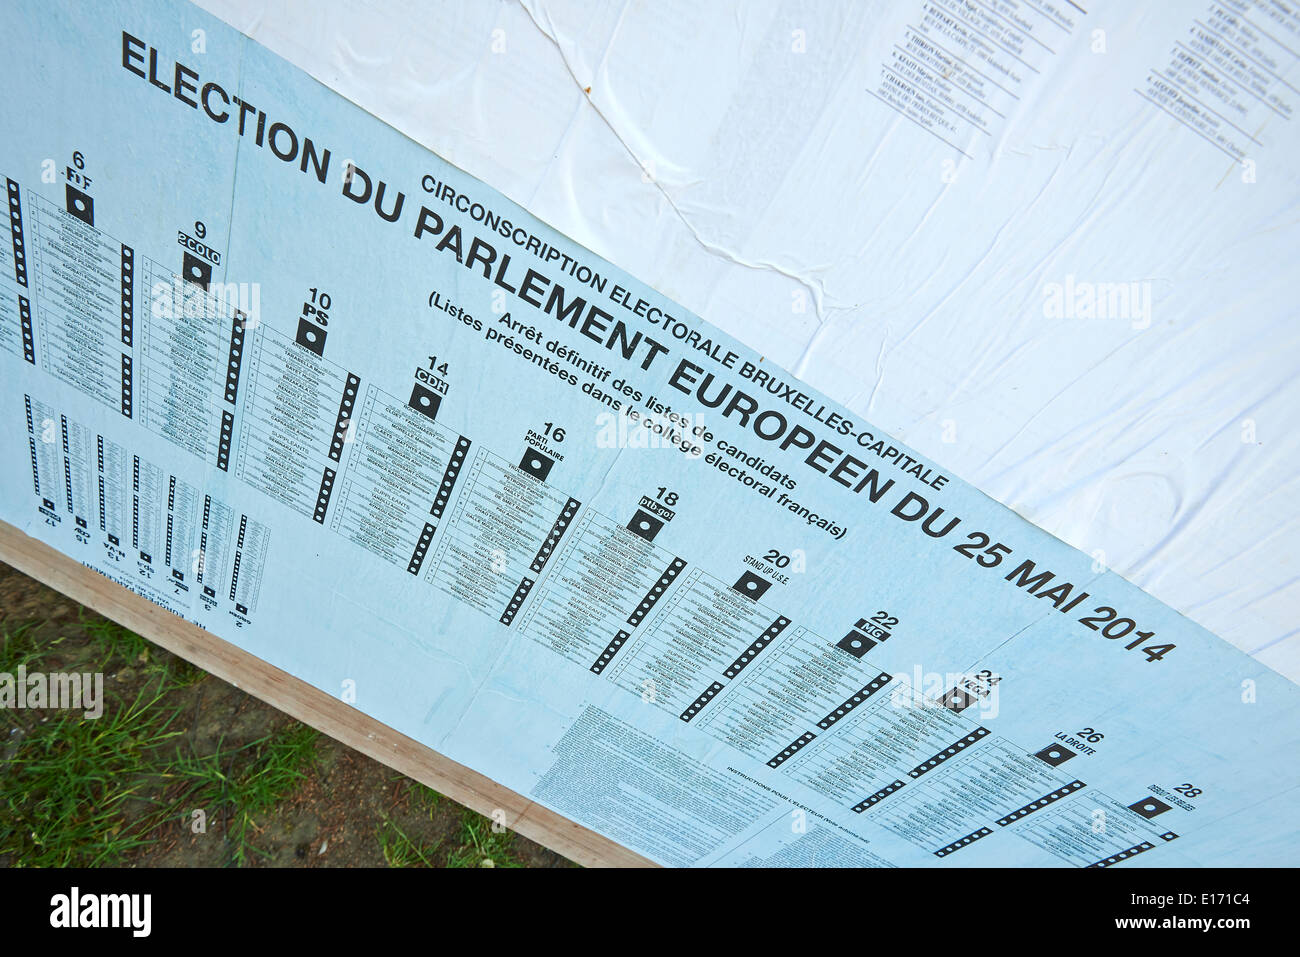 Bruxelles, Belgique. 25 mai, 2014. Élections européennes le 25 mai 2014 à Bruxelles. Panneaux d'information électorale. Crédit : Patrick Bombaert/Alamy Live News Banque D'Images